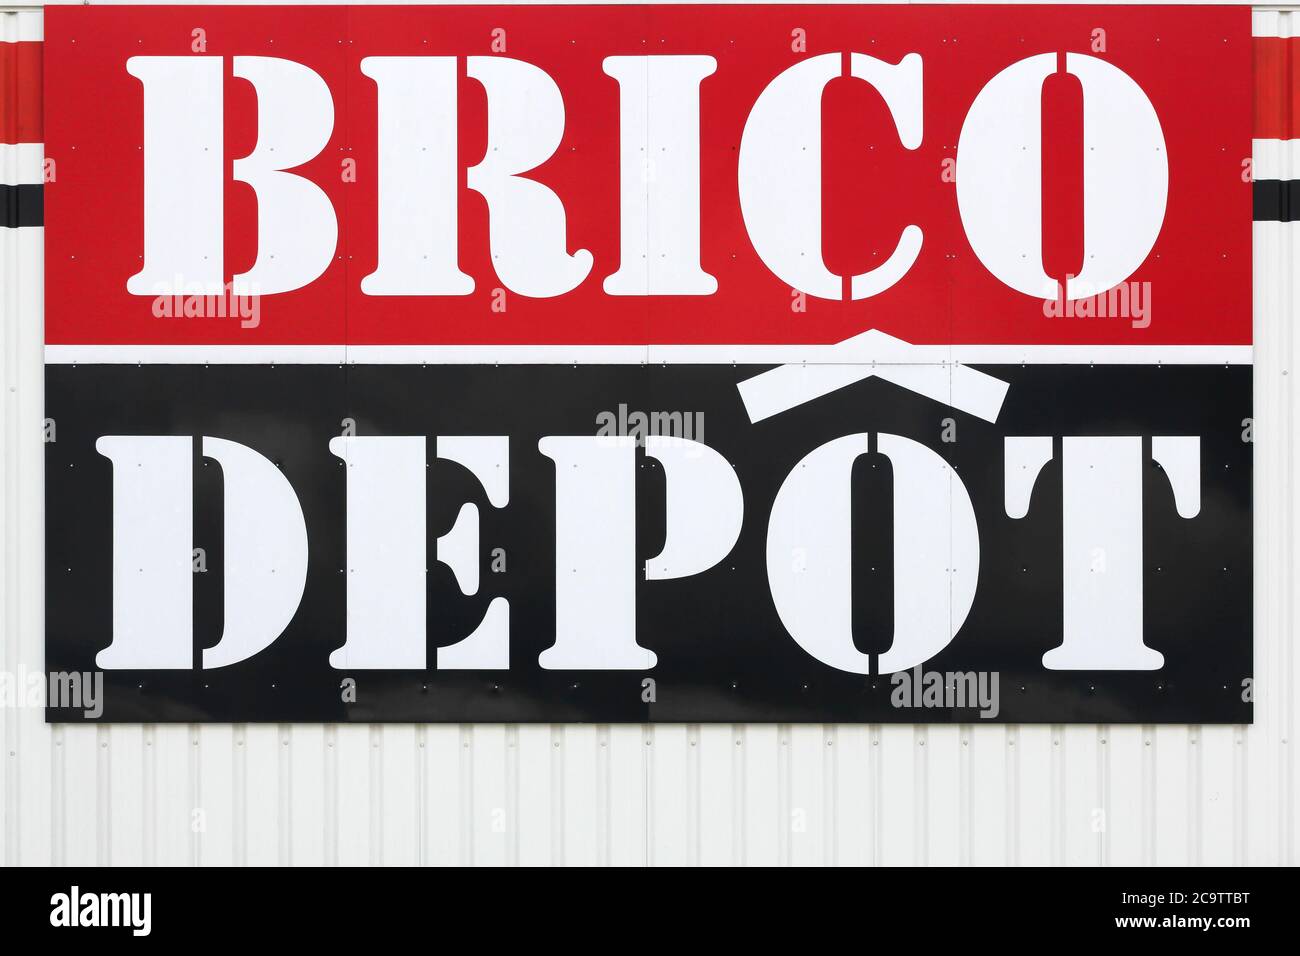 Villefranche, Frankreich - 7. Juni 2020: Brico Depot Logo an einer Wand. Brico Depot ist eine französische Kette von DIY und Home Improvement Stockfoto